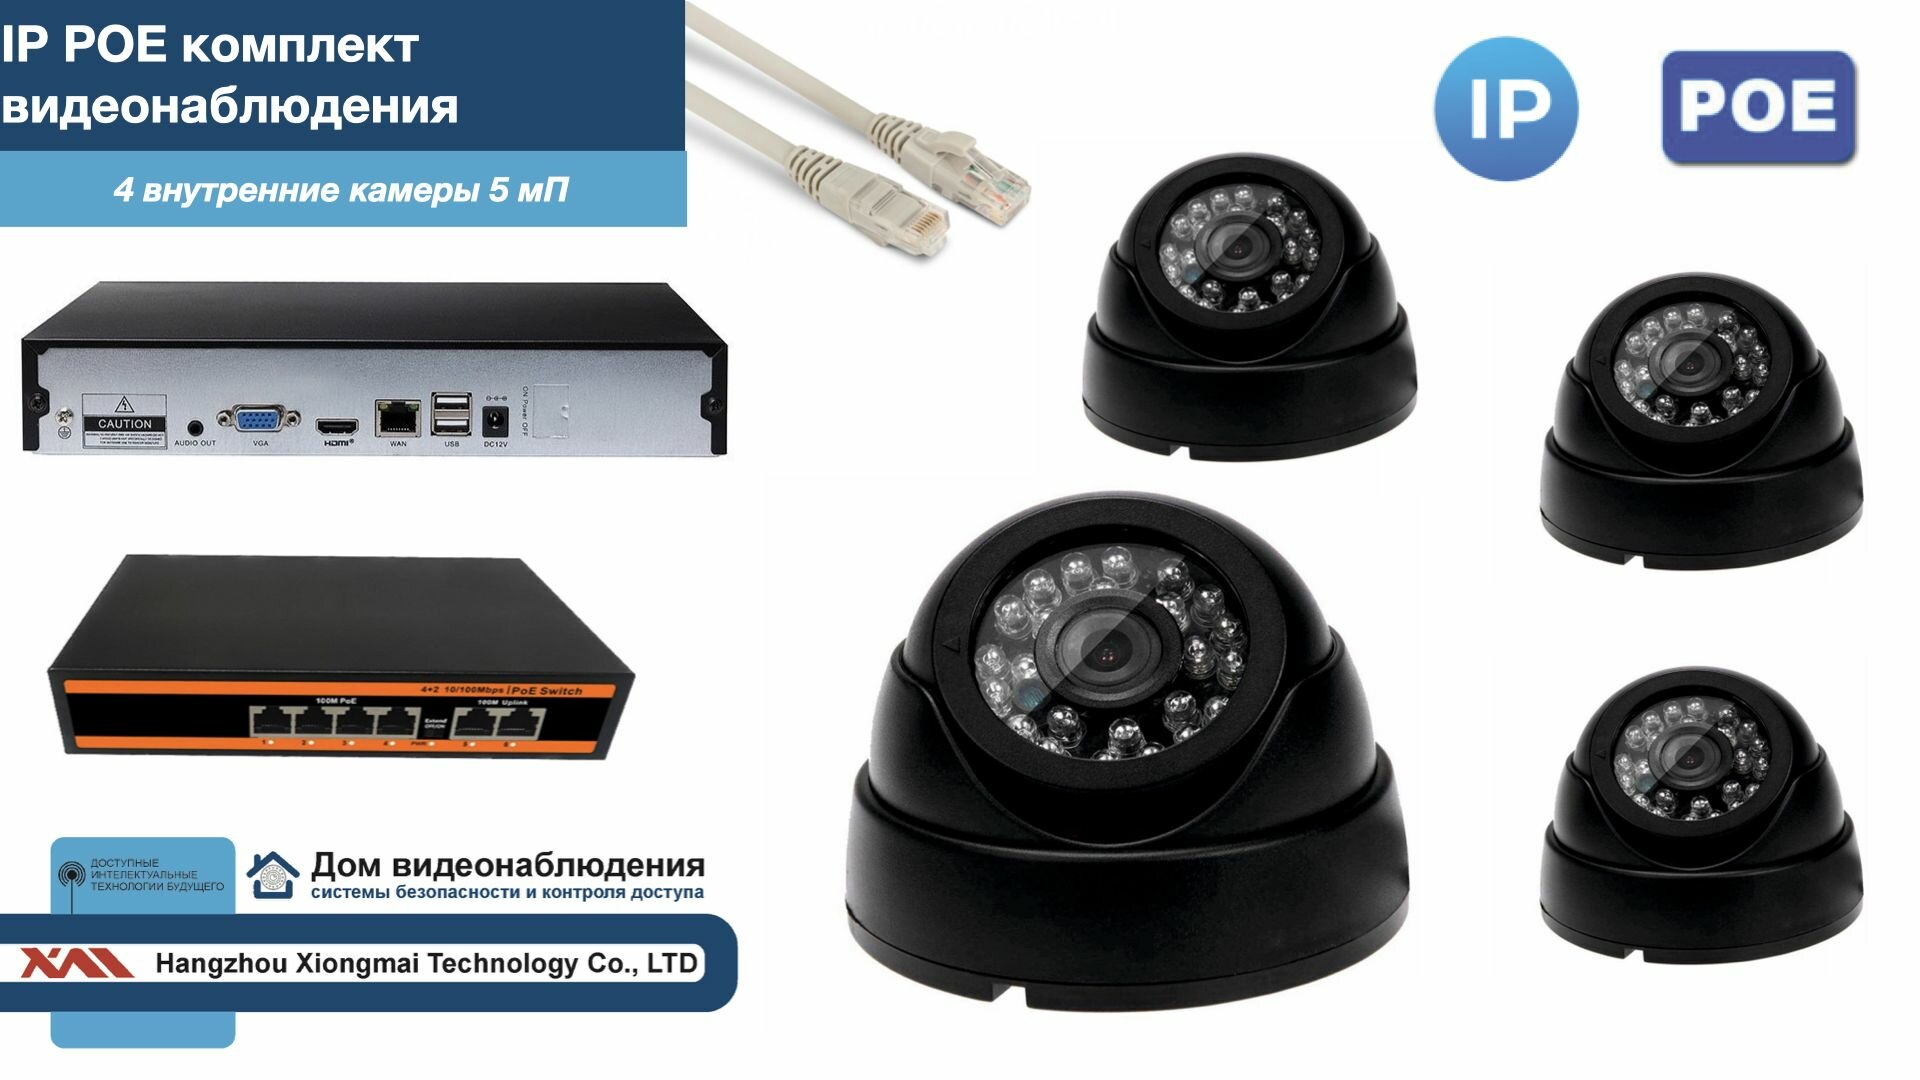 Полный IP POE комплект видеонаблюдения на 4 камеры (KIT4IPPOE300B5MP)